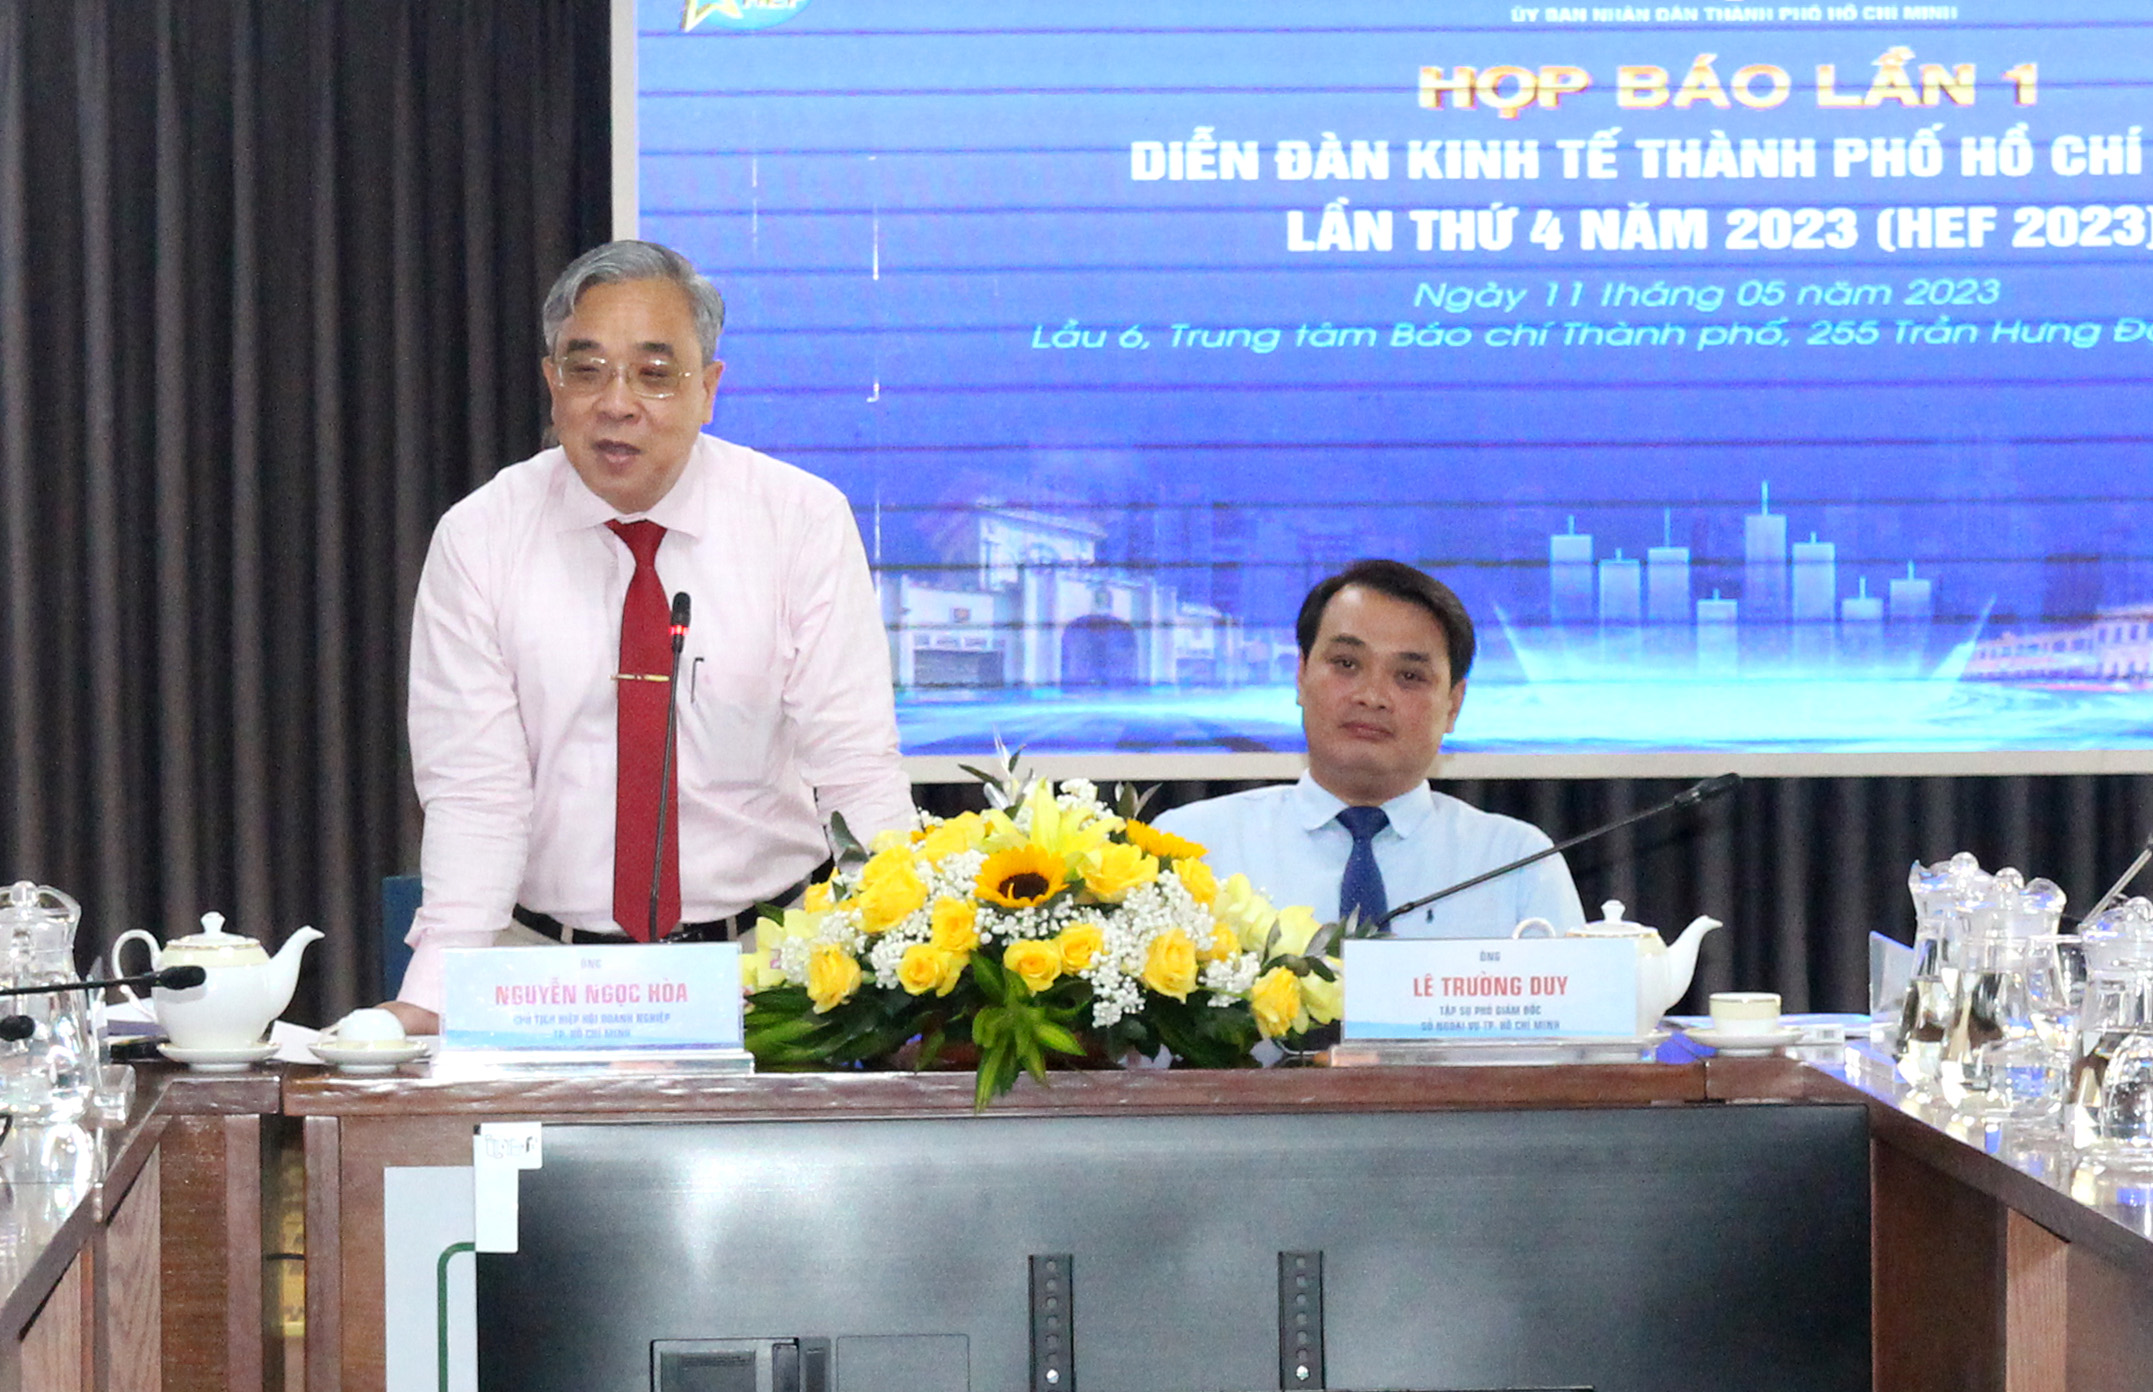 Đồng chí Nguyễn Ngọc Hòa, Chủ tịch Hiệp hội doanh nghiệp Thành phố, đại diện ban tổ chức HEF 2023 phát biểu tại buổi báo (Ảnh: H.Hào).